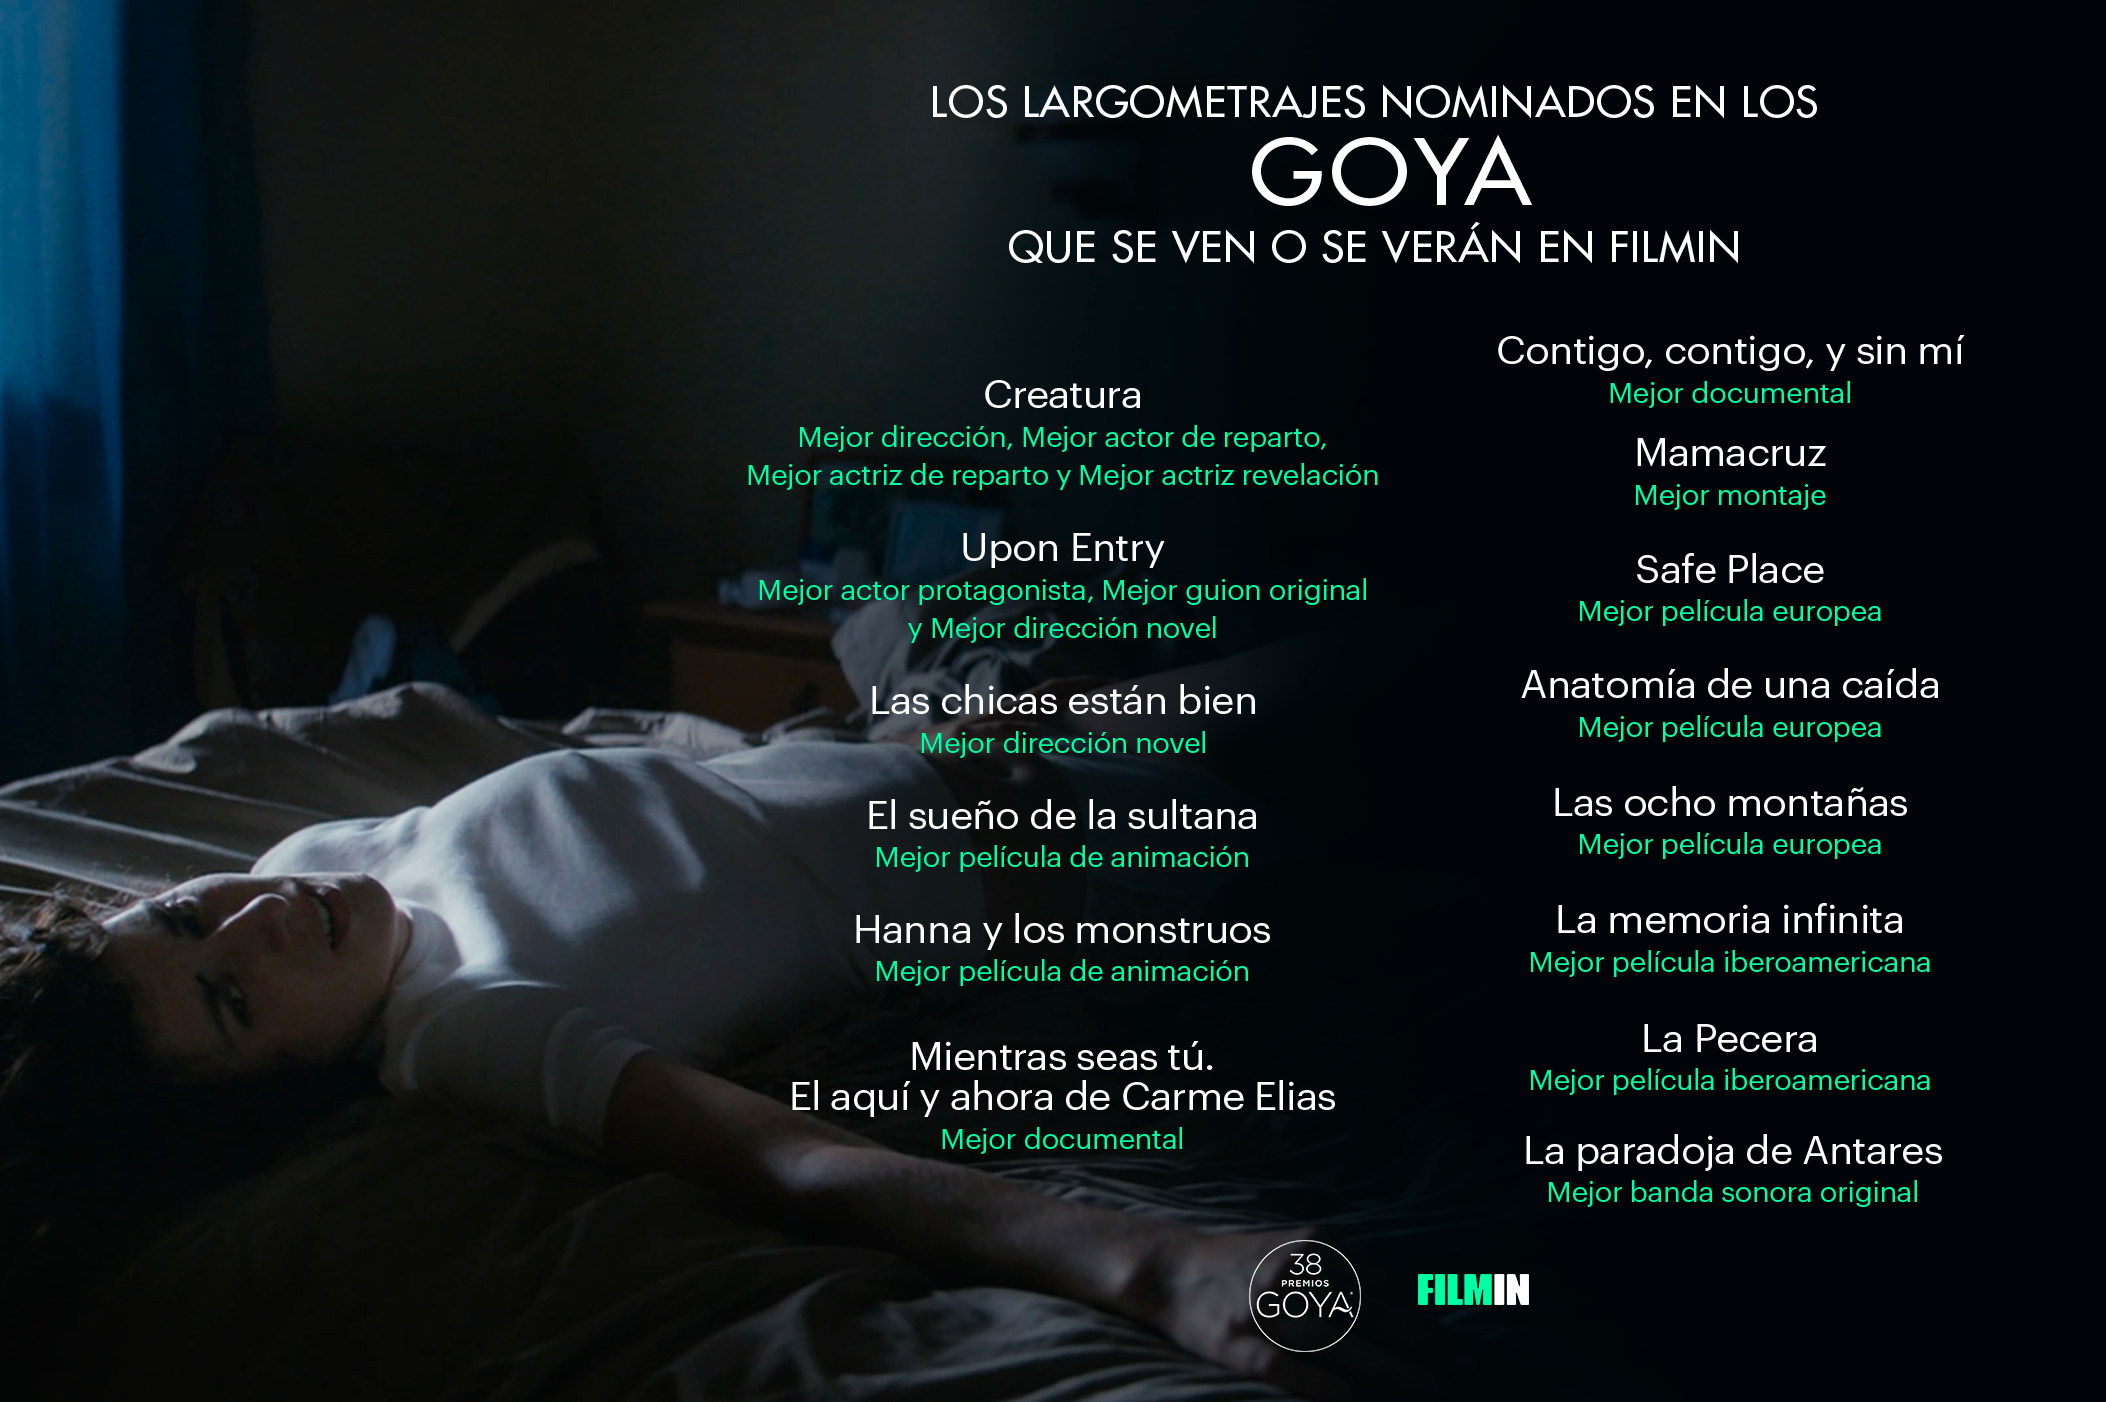 Las películas nominadas a los Goya que pueden o podrán verse en Filmin